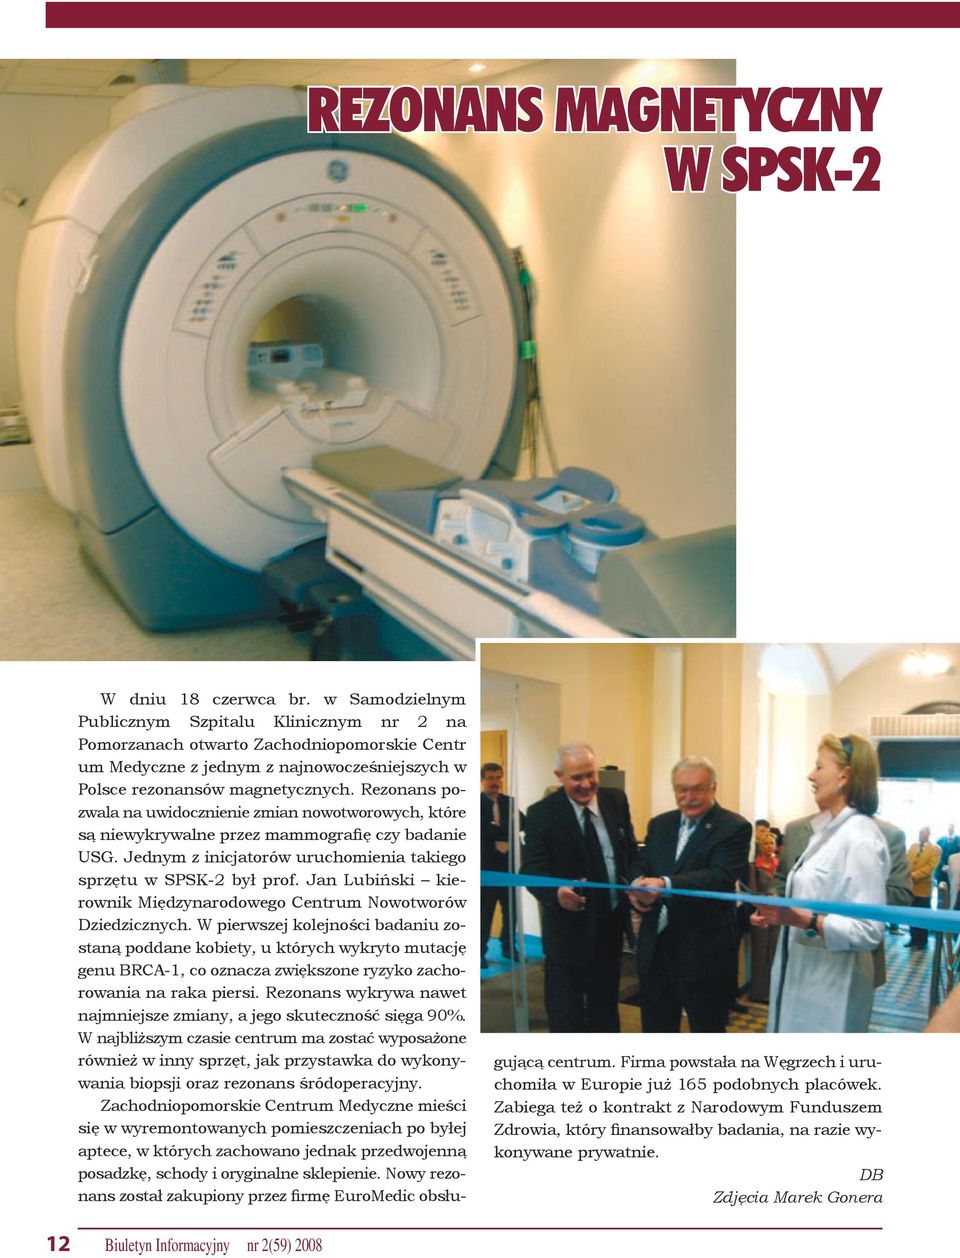 Rezonans pozwala na uwidocznienie zmian nowotworowych, które są niewykrywalne przez mammografię czy badanie USG. Jednym z inicjatorów uruchomienia takiego sprzętu w SPSK-2 był prof.